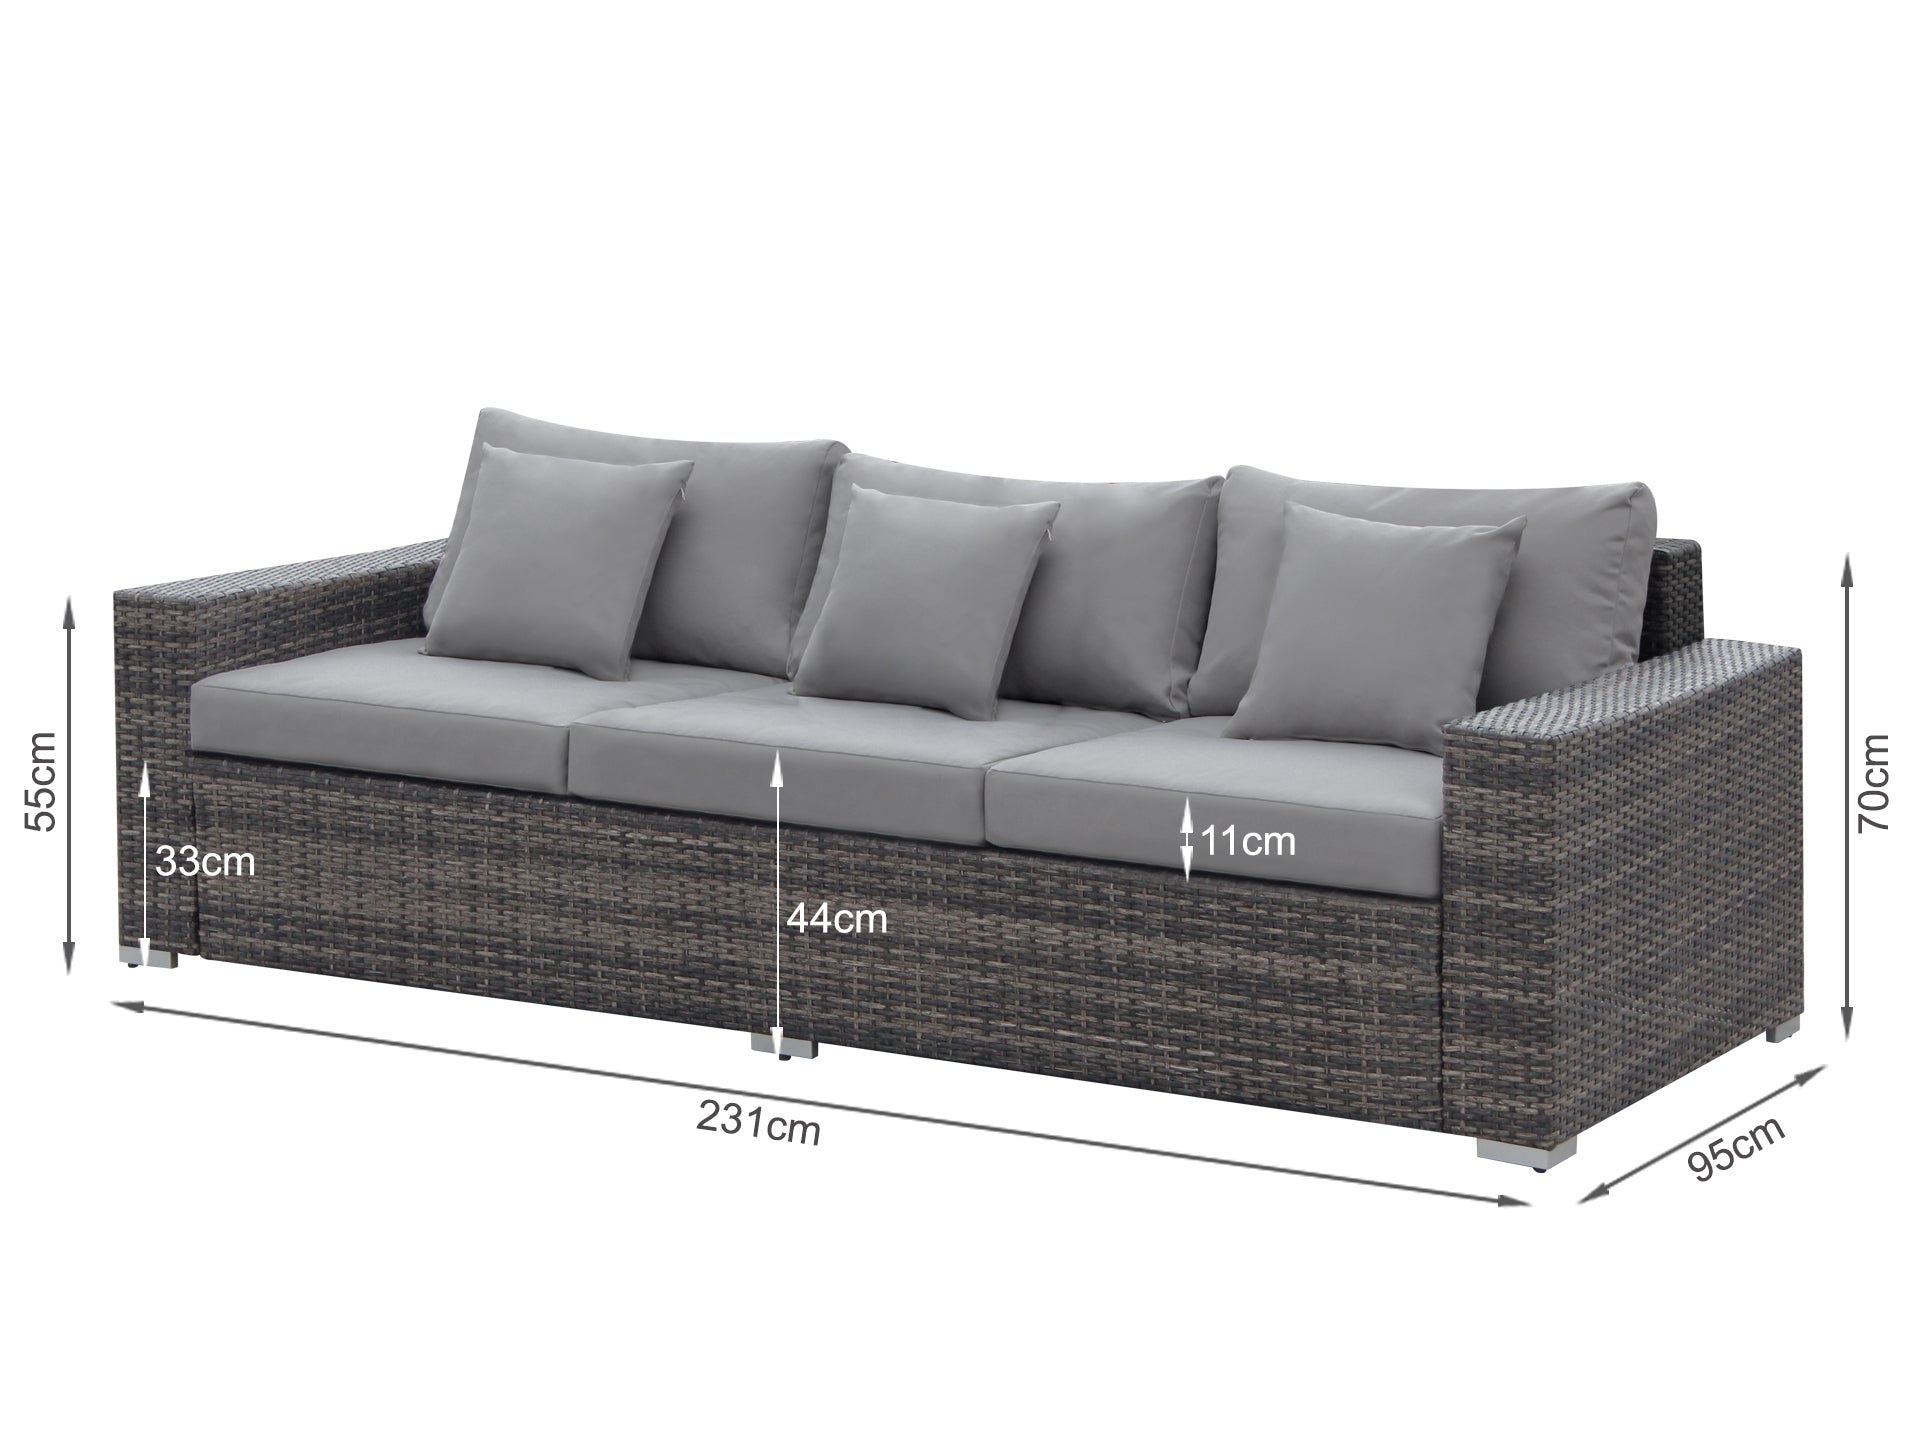 PALAWAN Rattan Outdoor Furniture Sofa Set 4PCS